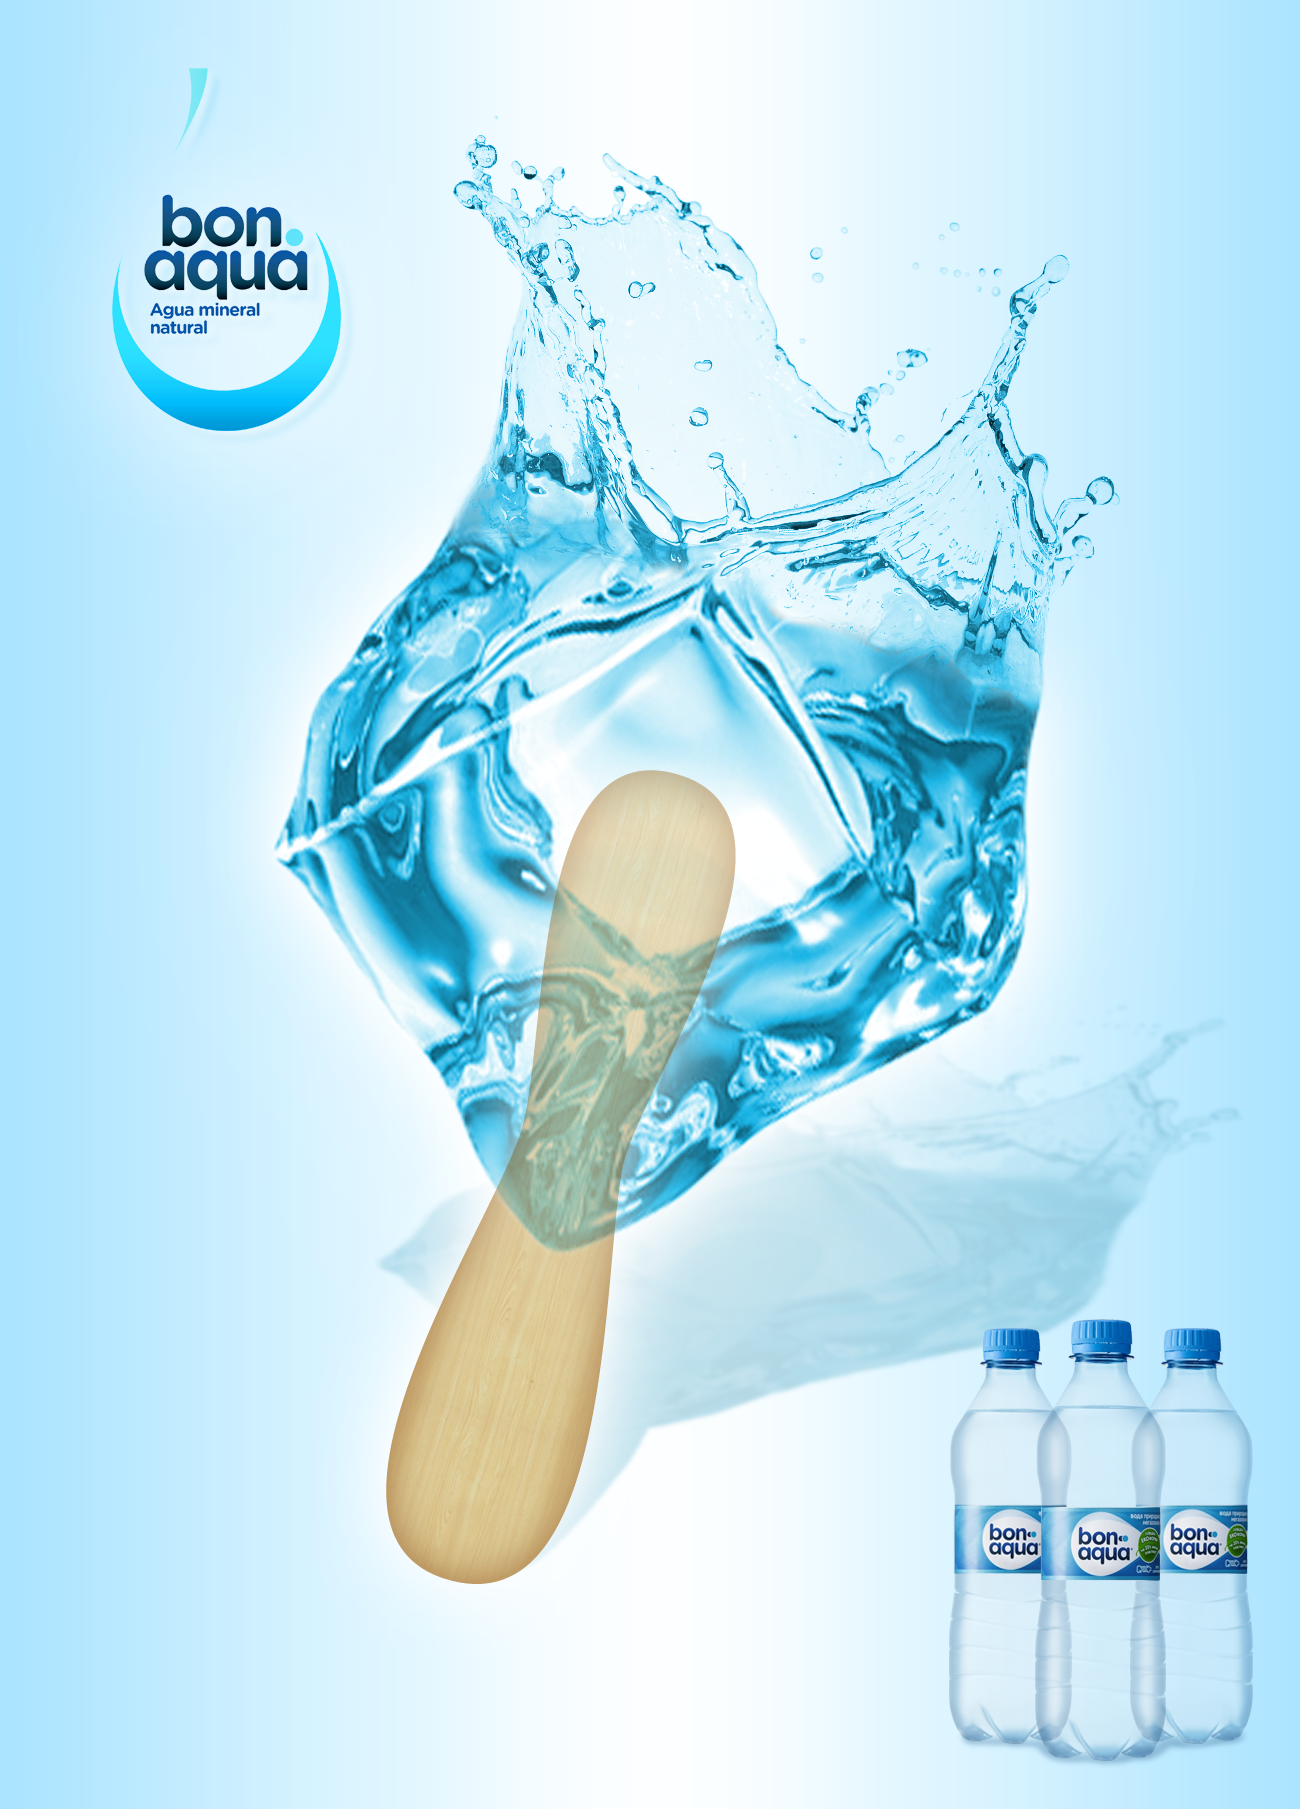 Рекламный баннер воды / Advertising banner water